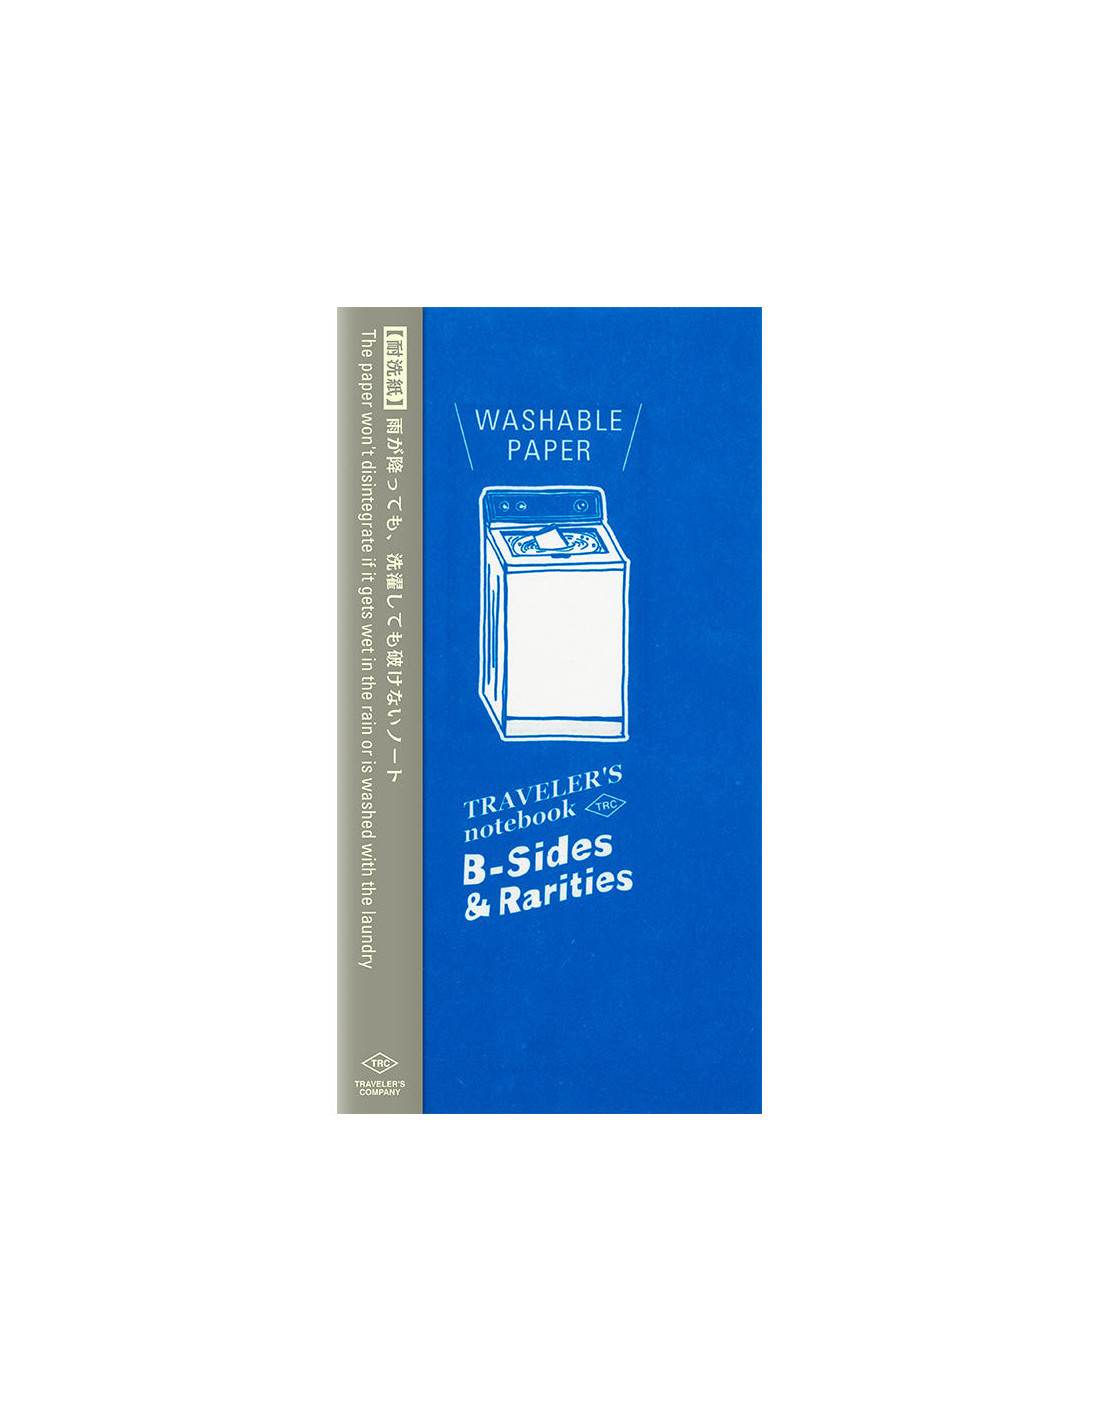 EDITION LIMITEE - Carnet Papier lavable - TRAVELER'S notebook